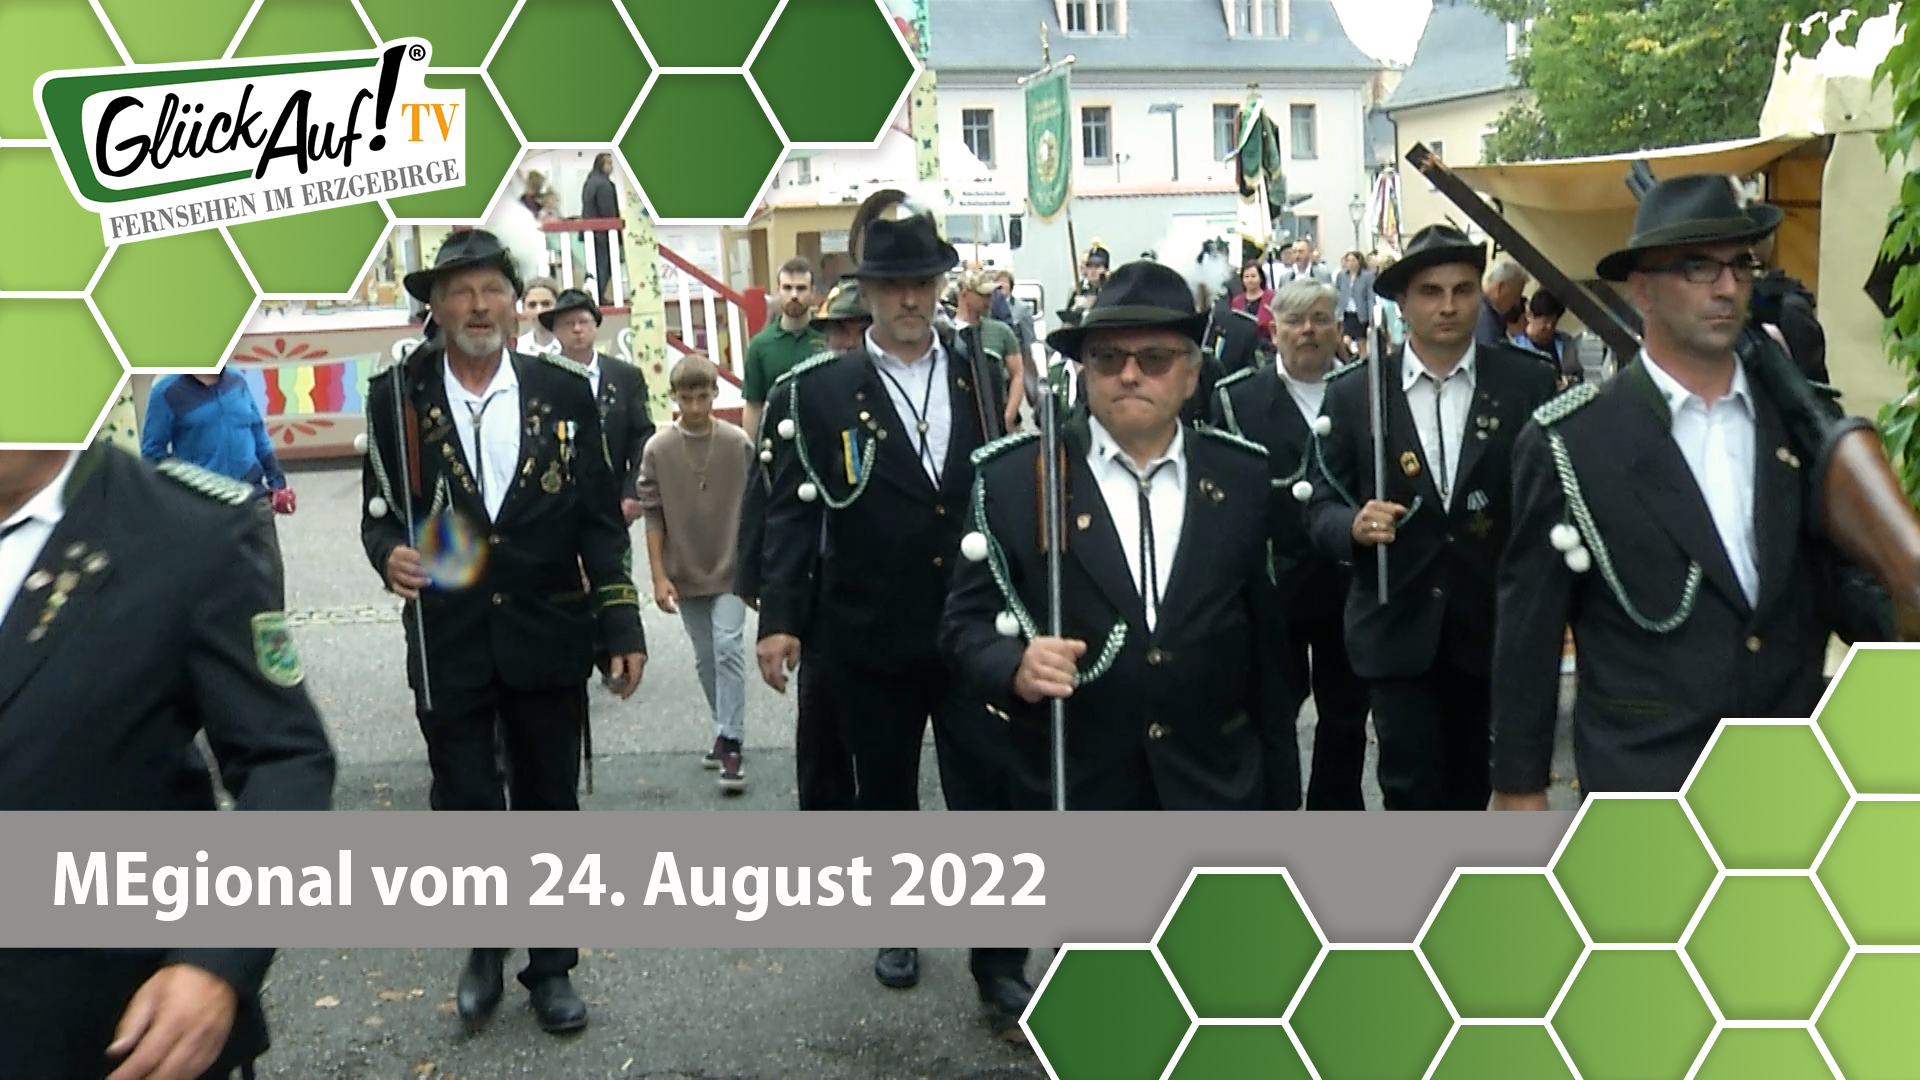 MEgional am 24. August 2022 - mit dem Schloß- und Schützenfest in Zschopau